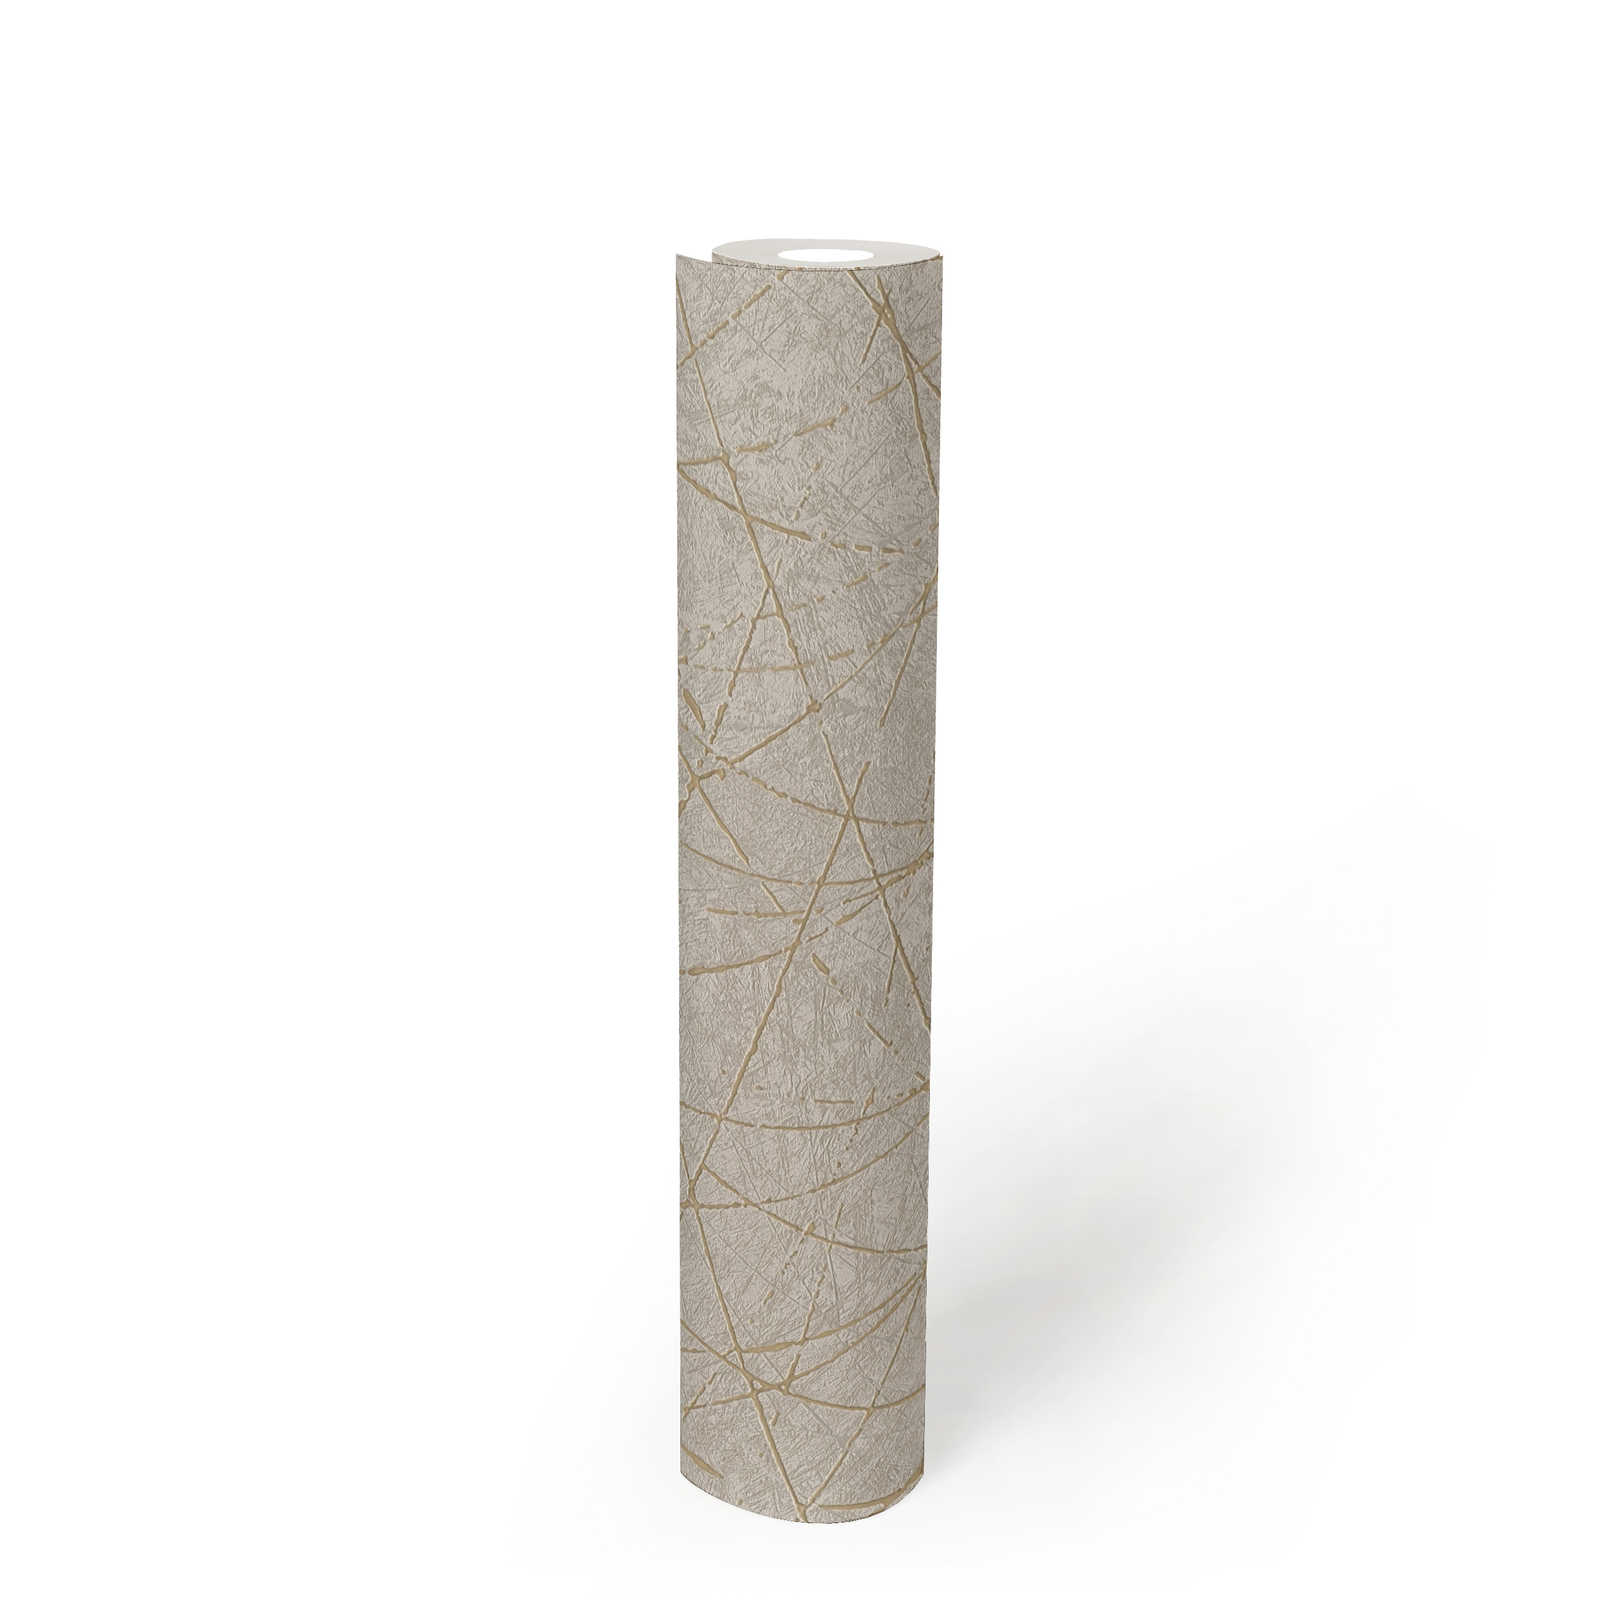             Vliestapete mit grafischen Linien & Metalliceffekt – Creme, Grau, Gold
        